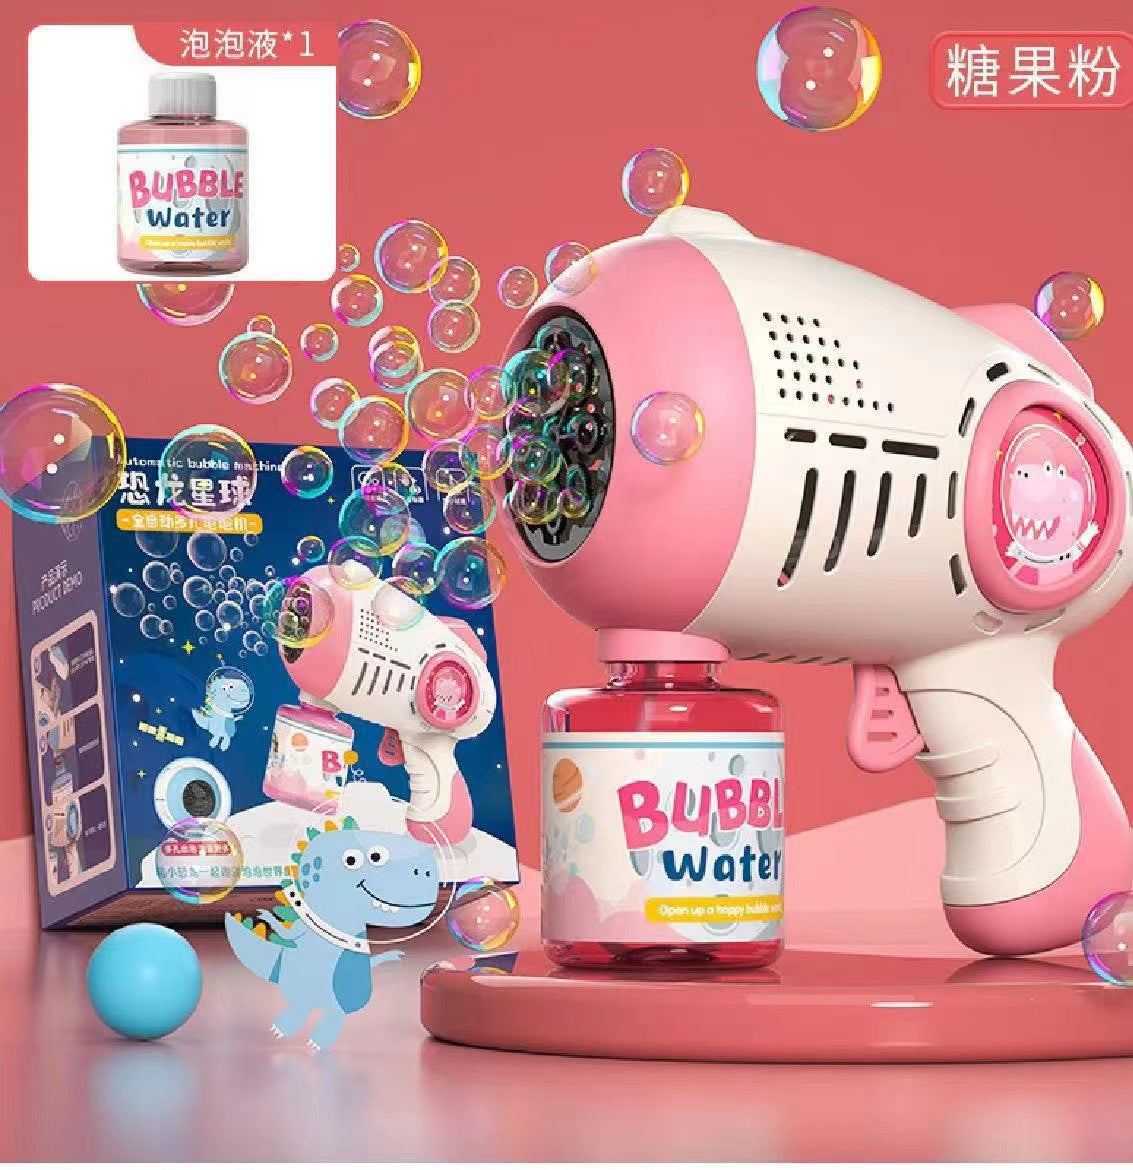 Panda astronaut bubble gun astronaut gatling electric bubble machine children&#039;s toys factory wholesale.